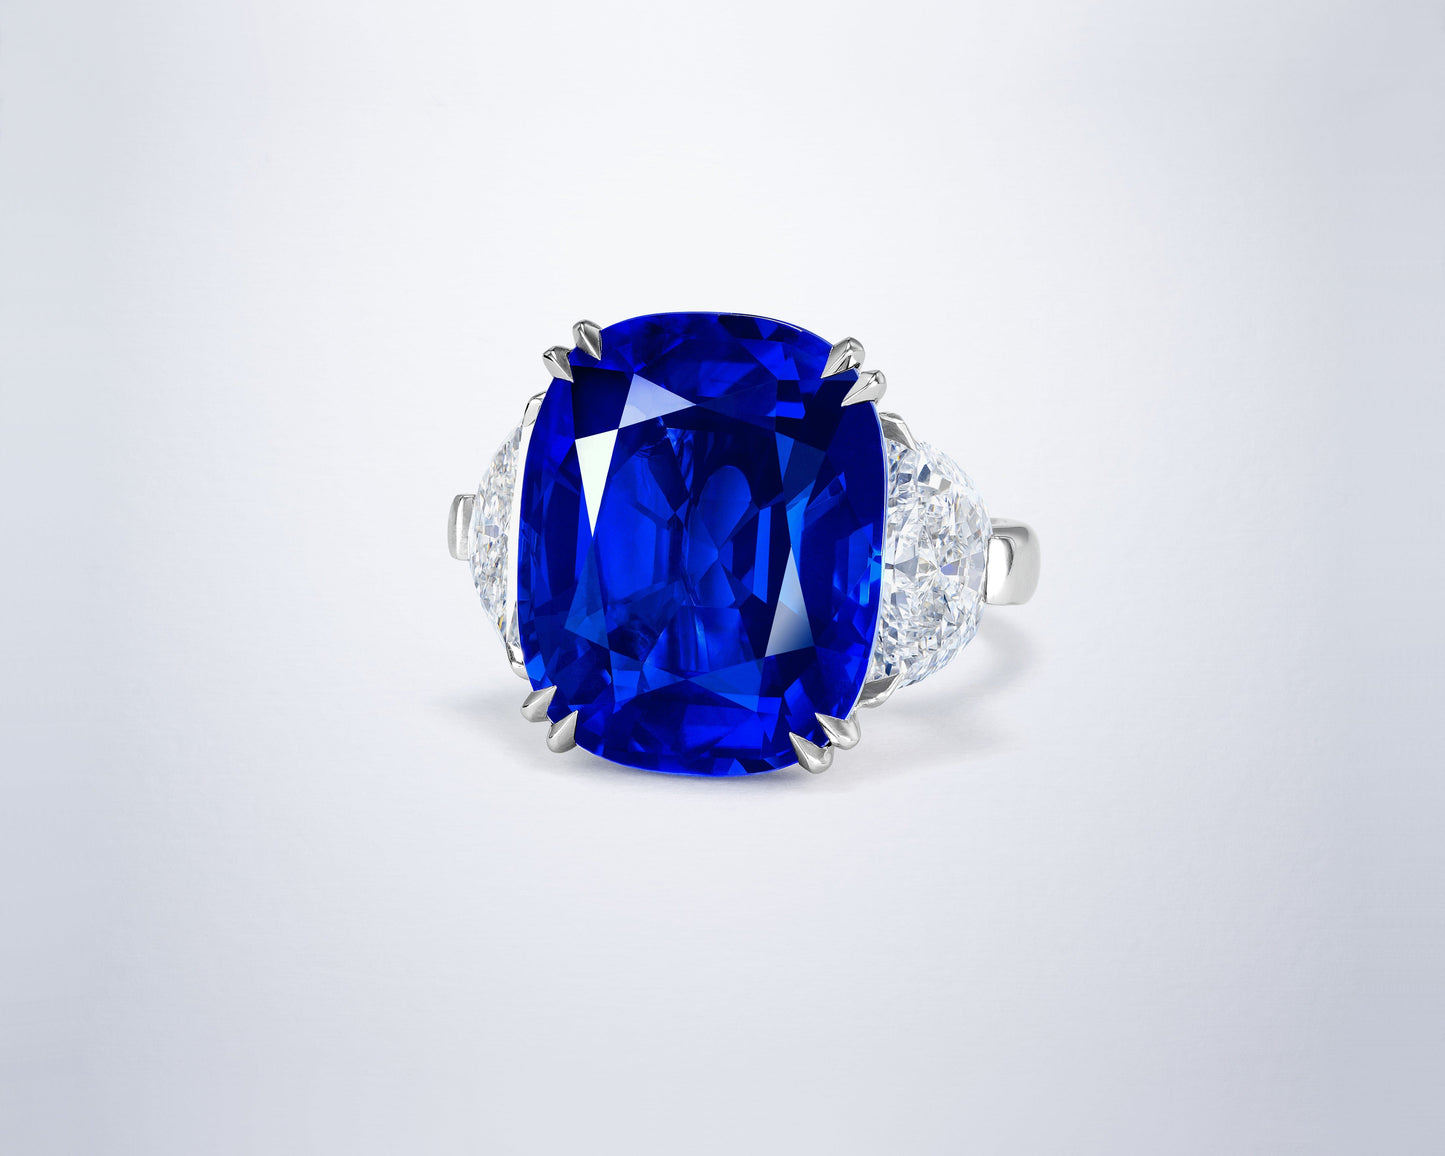 20.11 carat Cushion Cut Kashmir Sapphire Ring